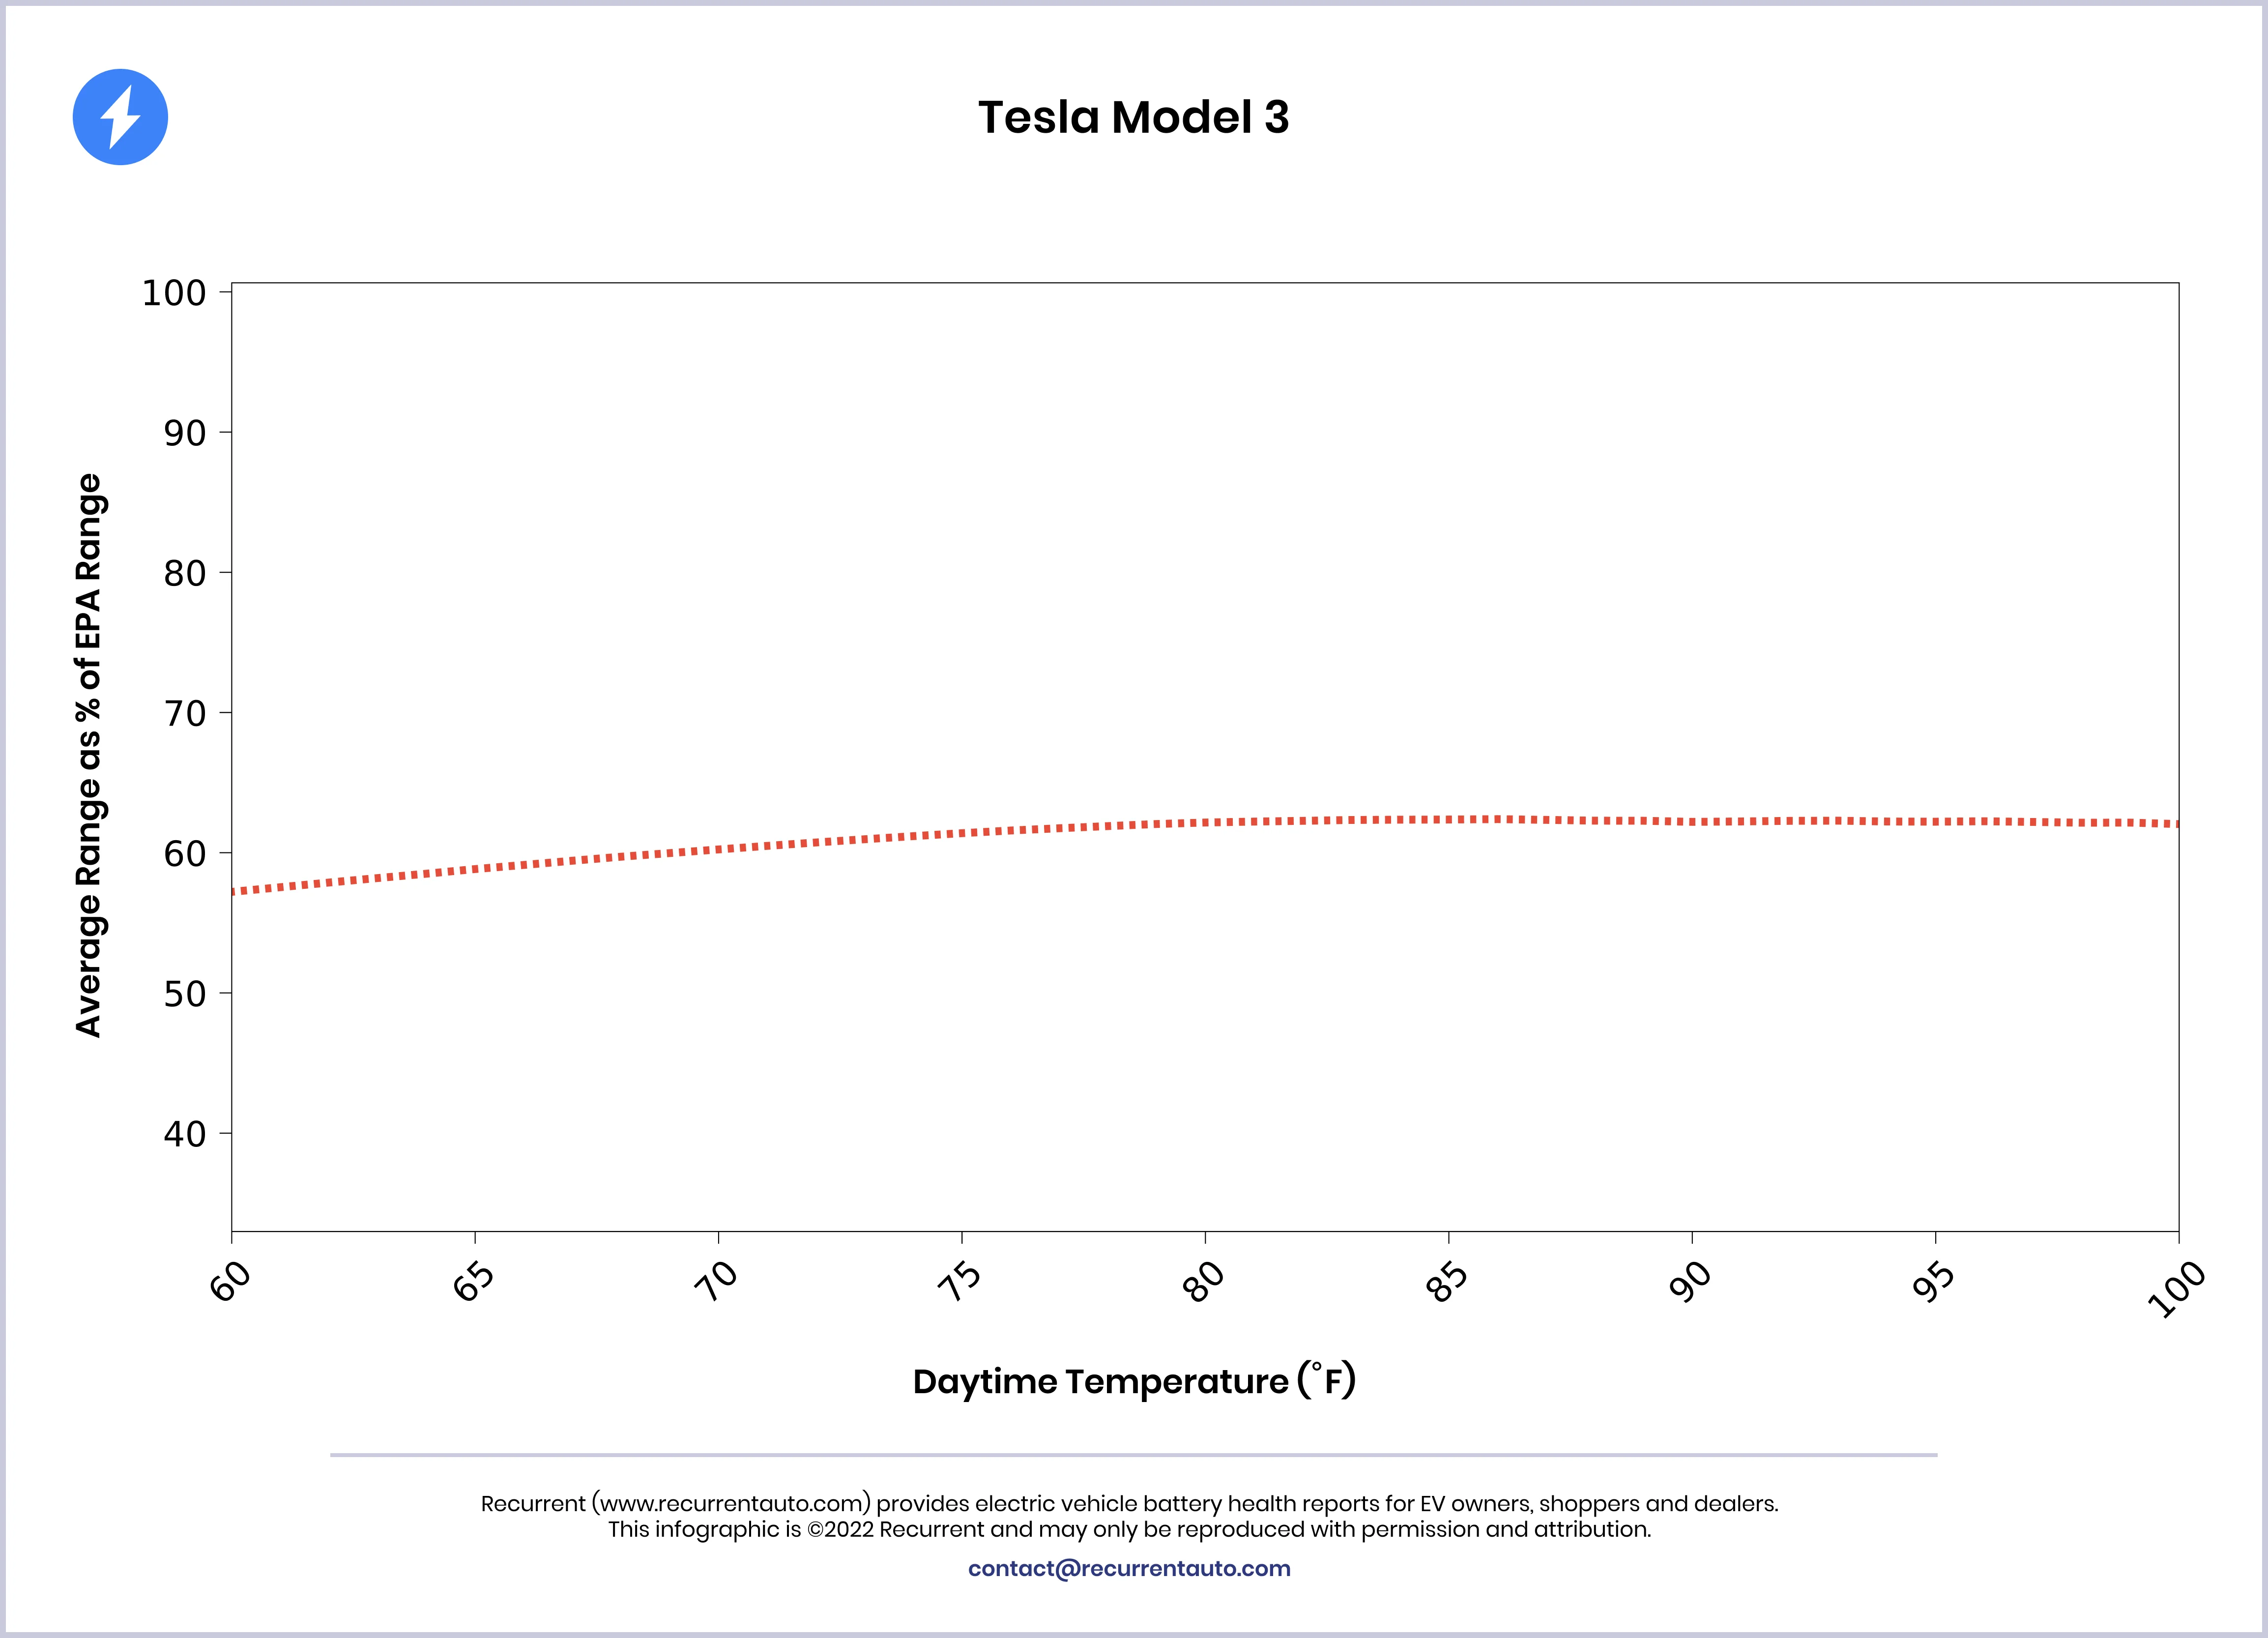 Model 3 temperature dependence ofRange